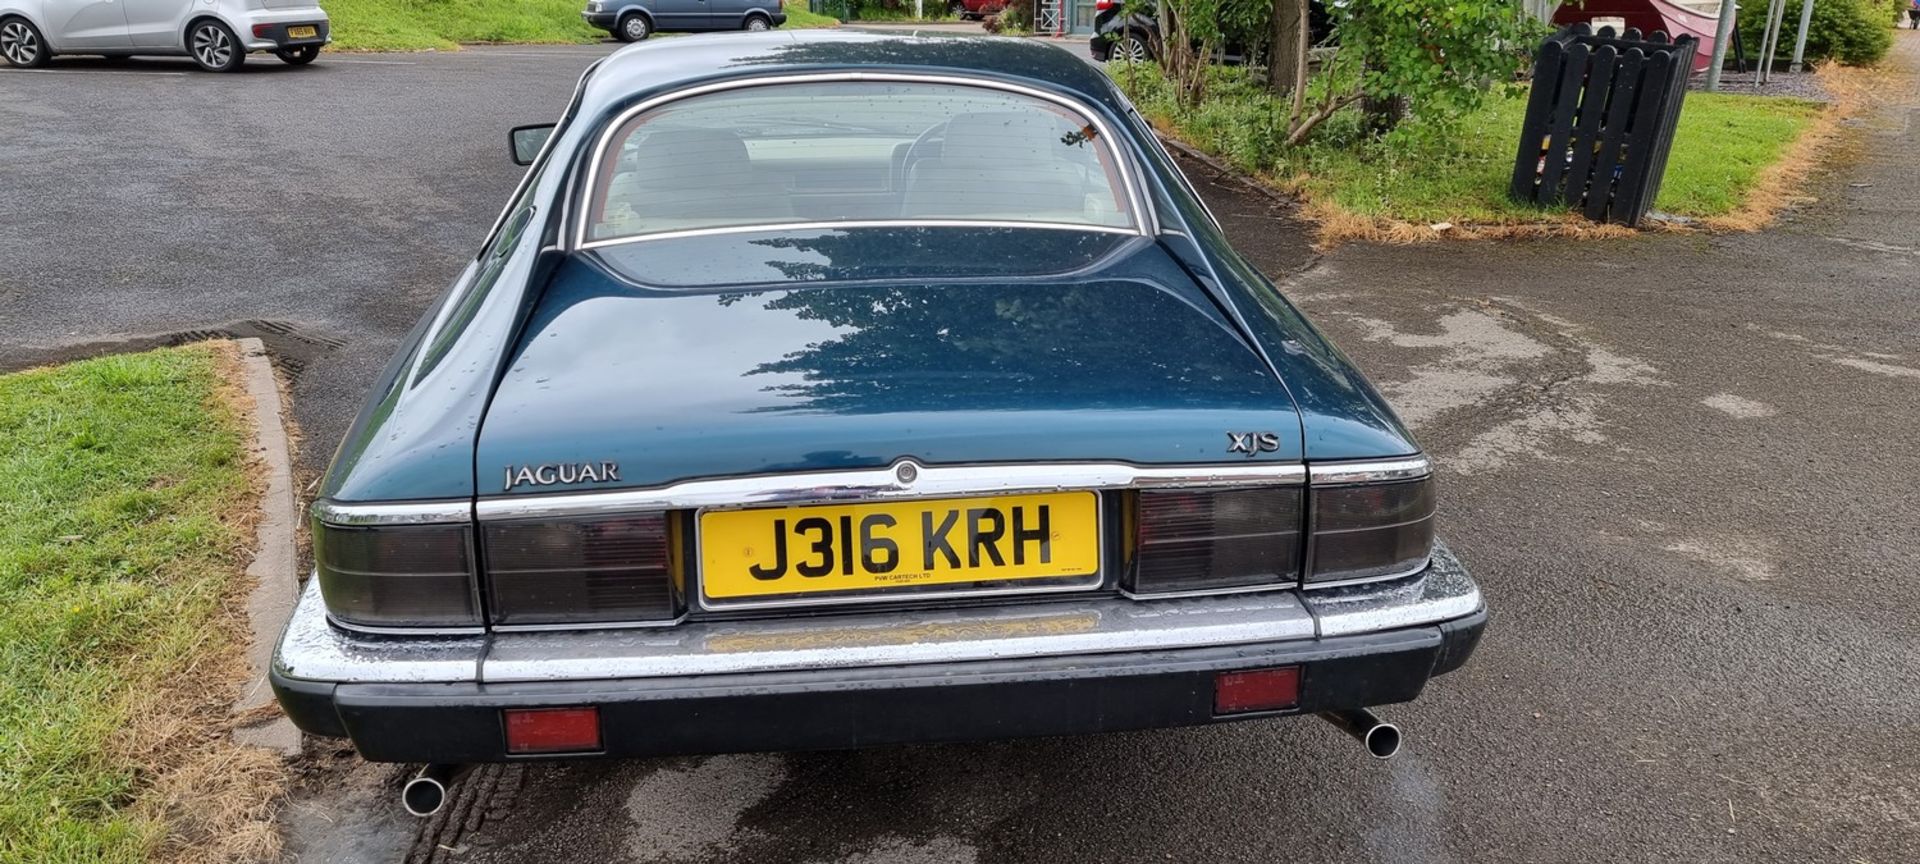 1991 Jaguar XJS Coupe, 3980 cc. Registration number J316 KRH. Chassis number SAJJNAED3EK180597. - Image 11 of 19